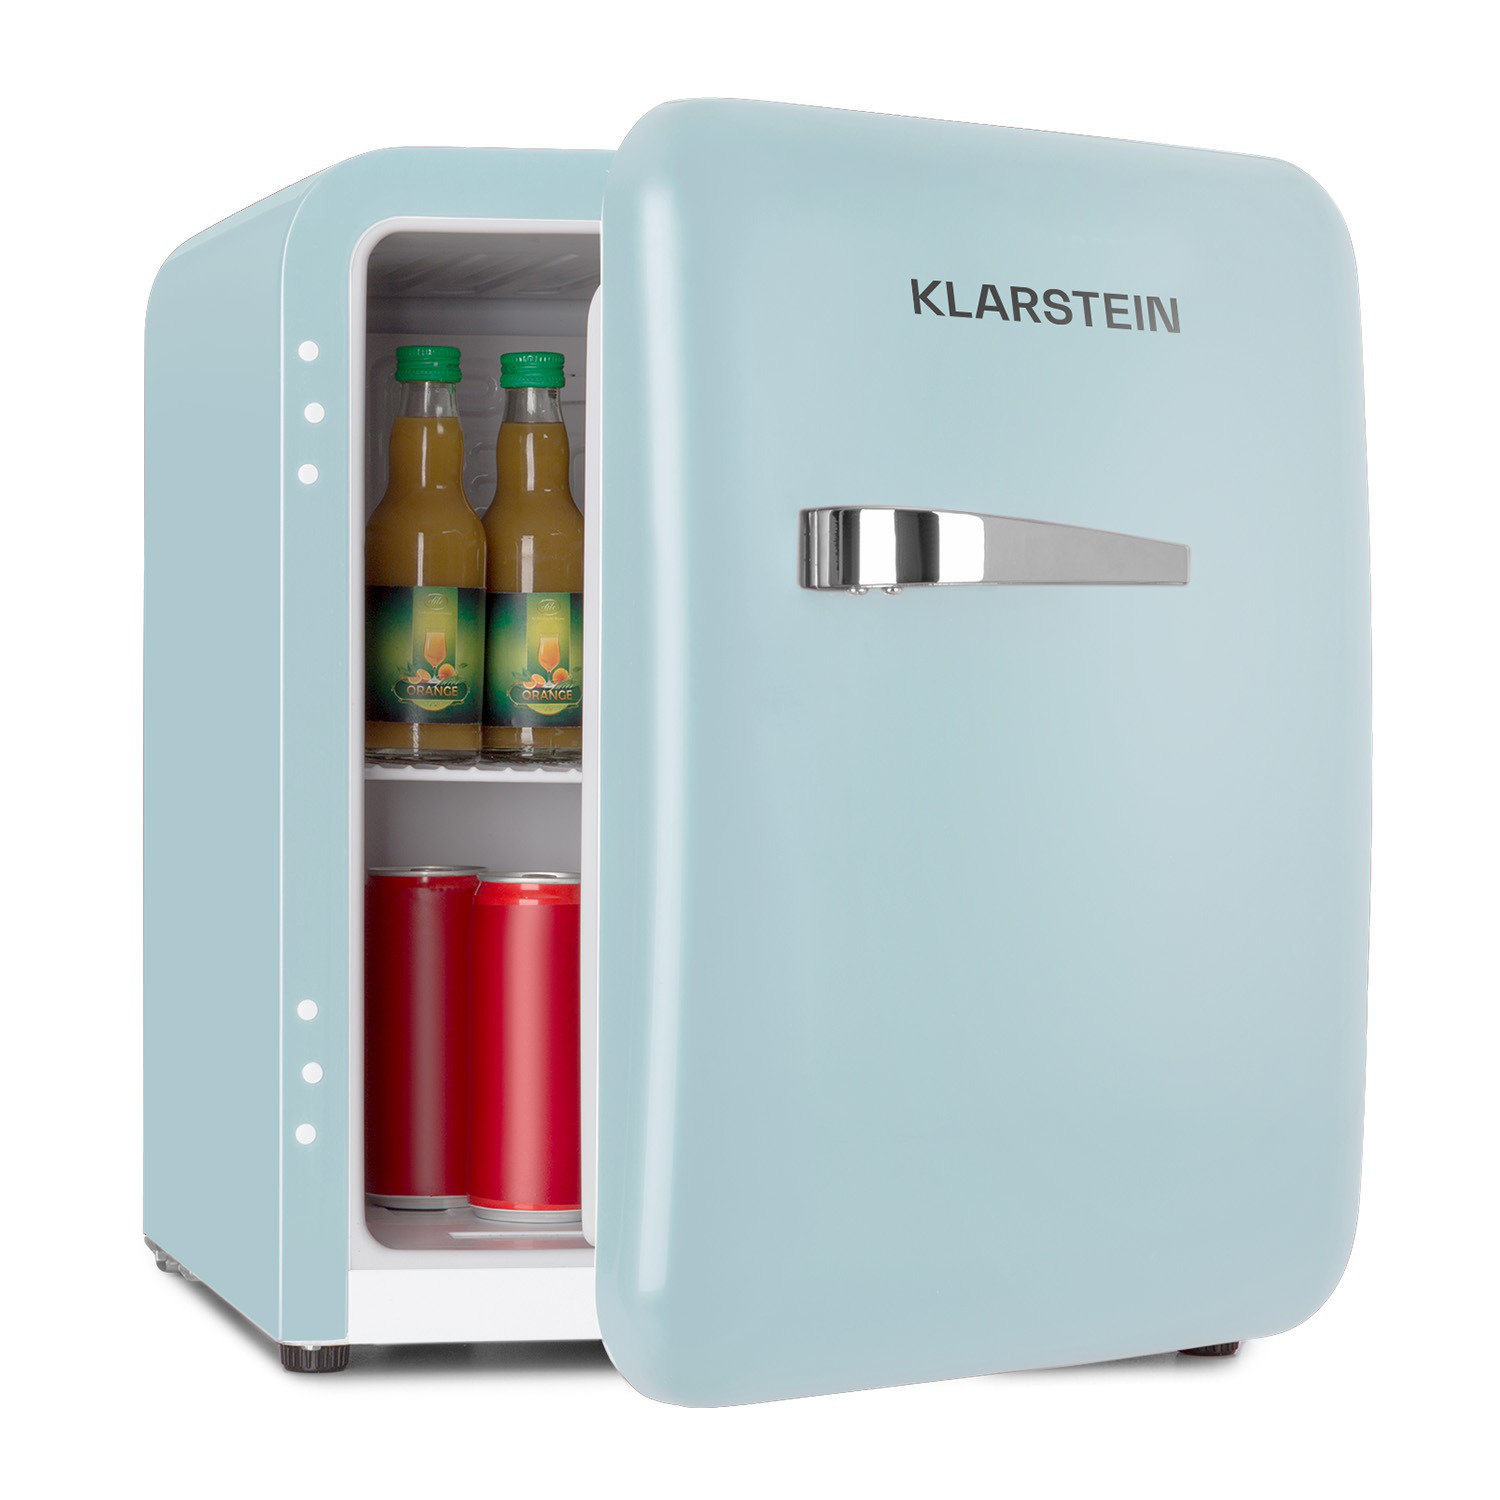 Klarstein 48 L Mini-Kühlschrank Audrey EEK A+